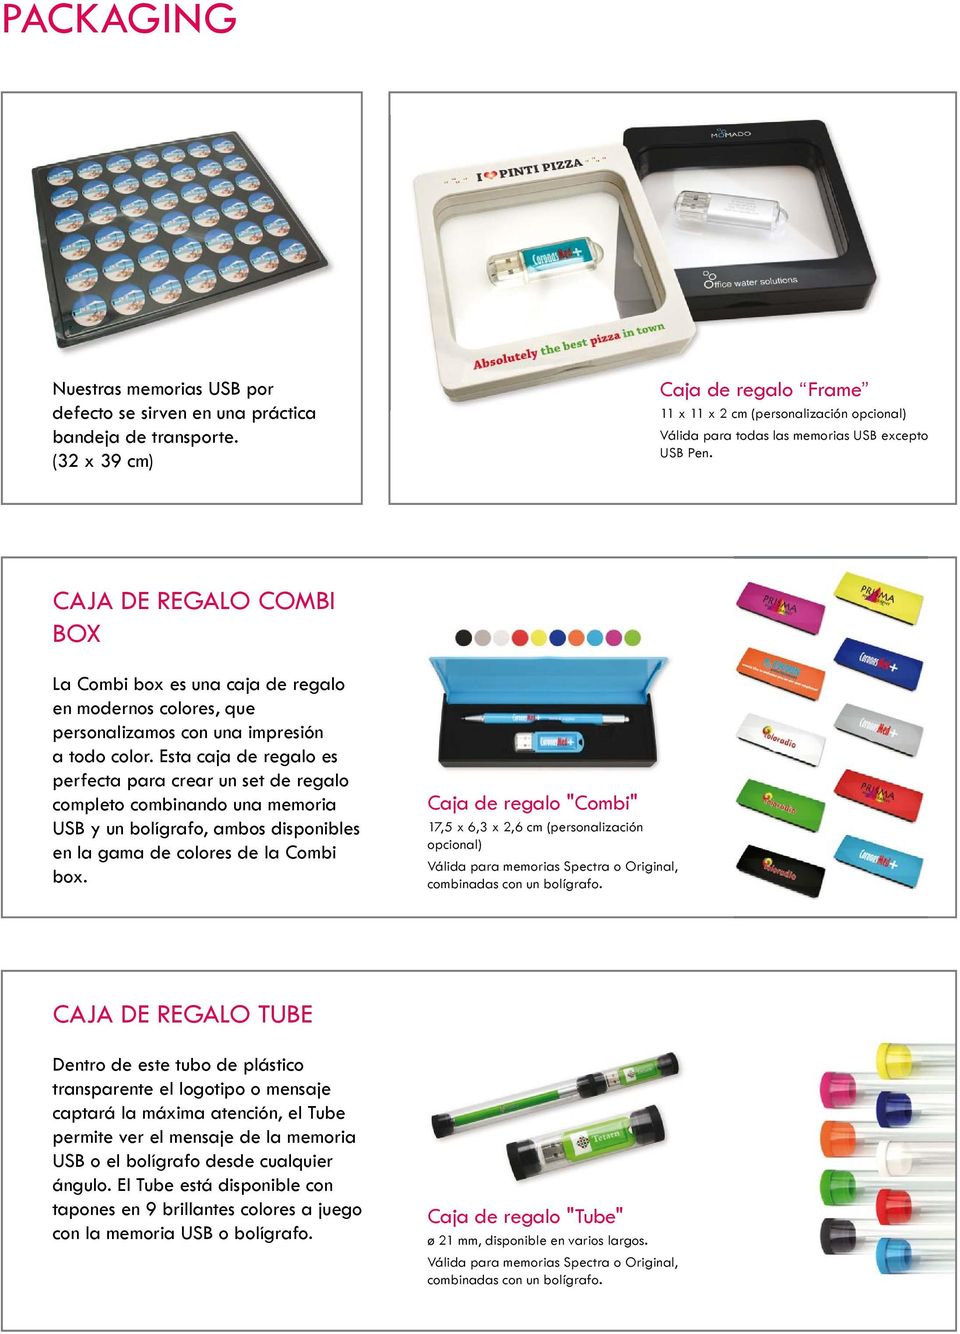 CAJA DE REGALO COMBI BOX La Combi box es una caja de regalo en modernos colores, que personalizamos con una impresión a todo color.